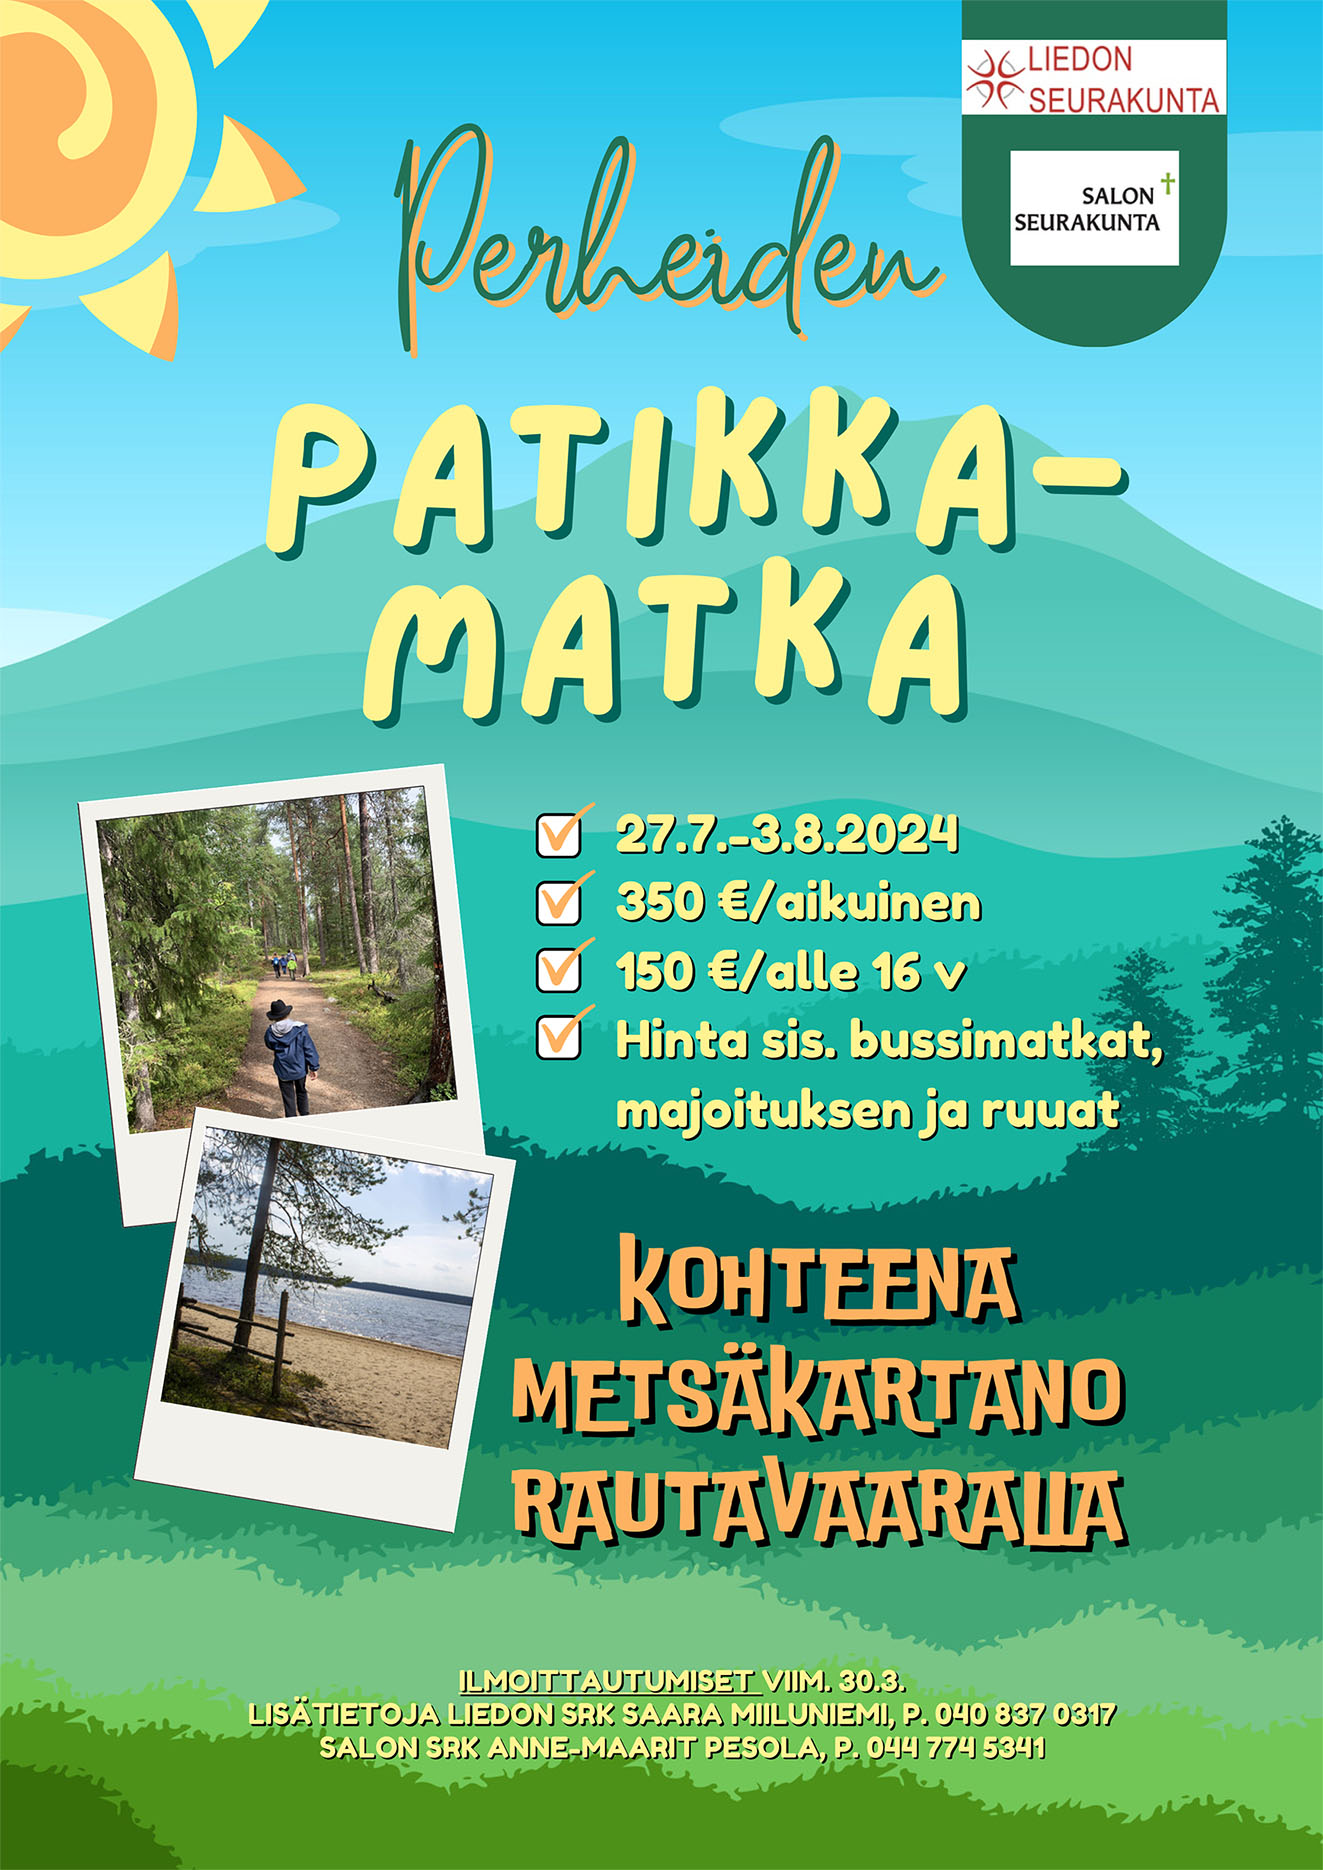 Perheiden patikkamatka Metsäkartanoon Rautavaaralle 27.7.-3.8.2024. Hinta 350€ / aikuinen ja 150€ / alle 16 v.